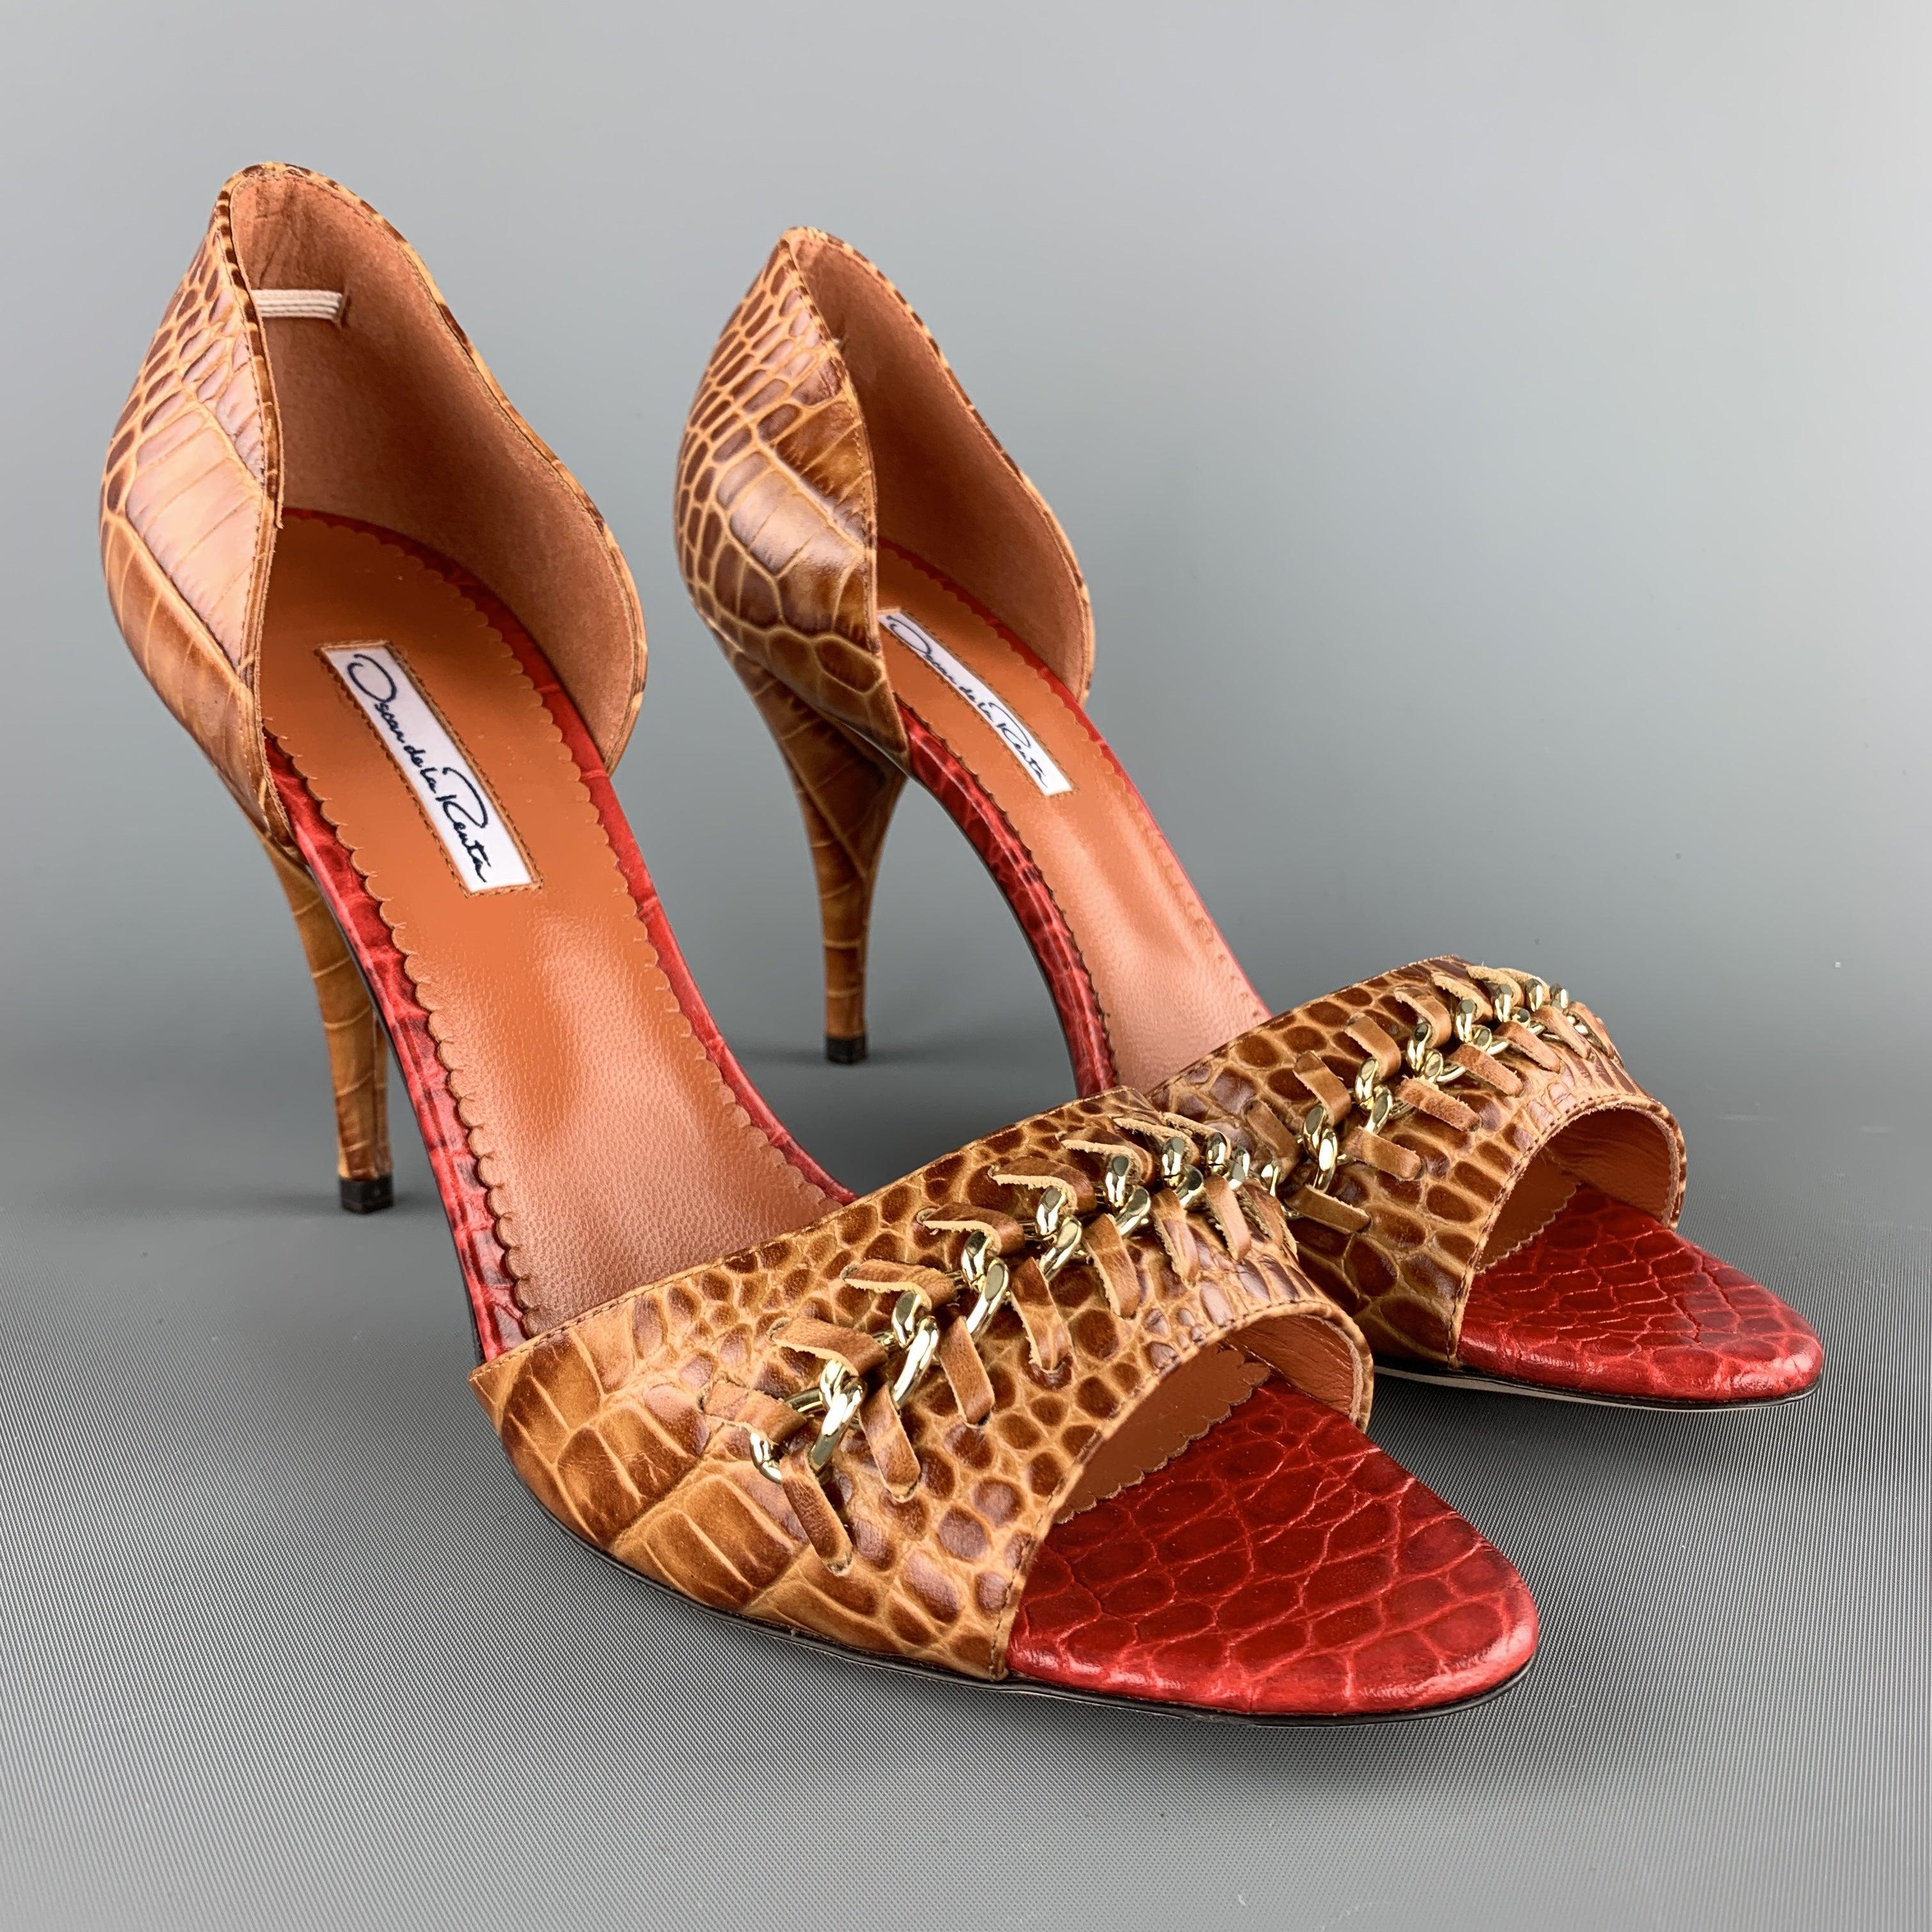 Les escarpins D'orsay OSCAR DE LA RENTA sont en cuir gaufré d'alligator beige et présentent un bout pointu, un talon conique couvert, une semelle intérieure en cuir gaufré rouge et une bride d'orteil tissée en chaîne de tonalités dorées. Fabriqué en